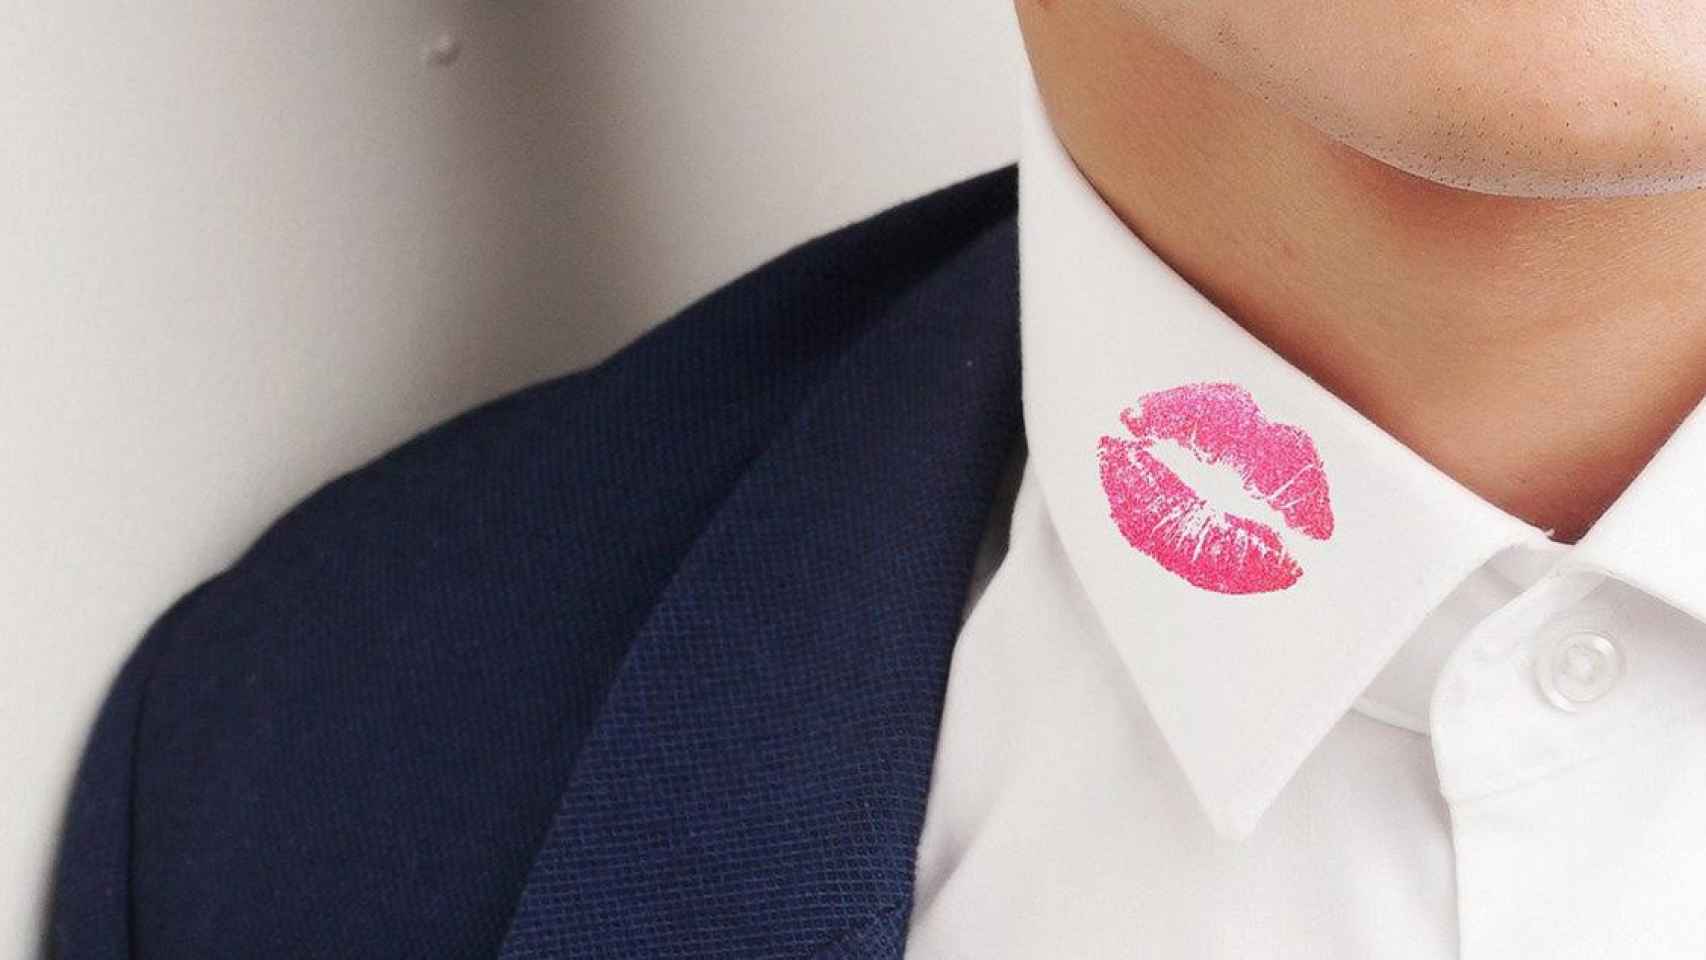 Un beso en el cuello de la camisa, una señal que podría generar sospechas sobre posibles infidelidades / PIXABAY